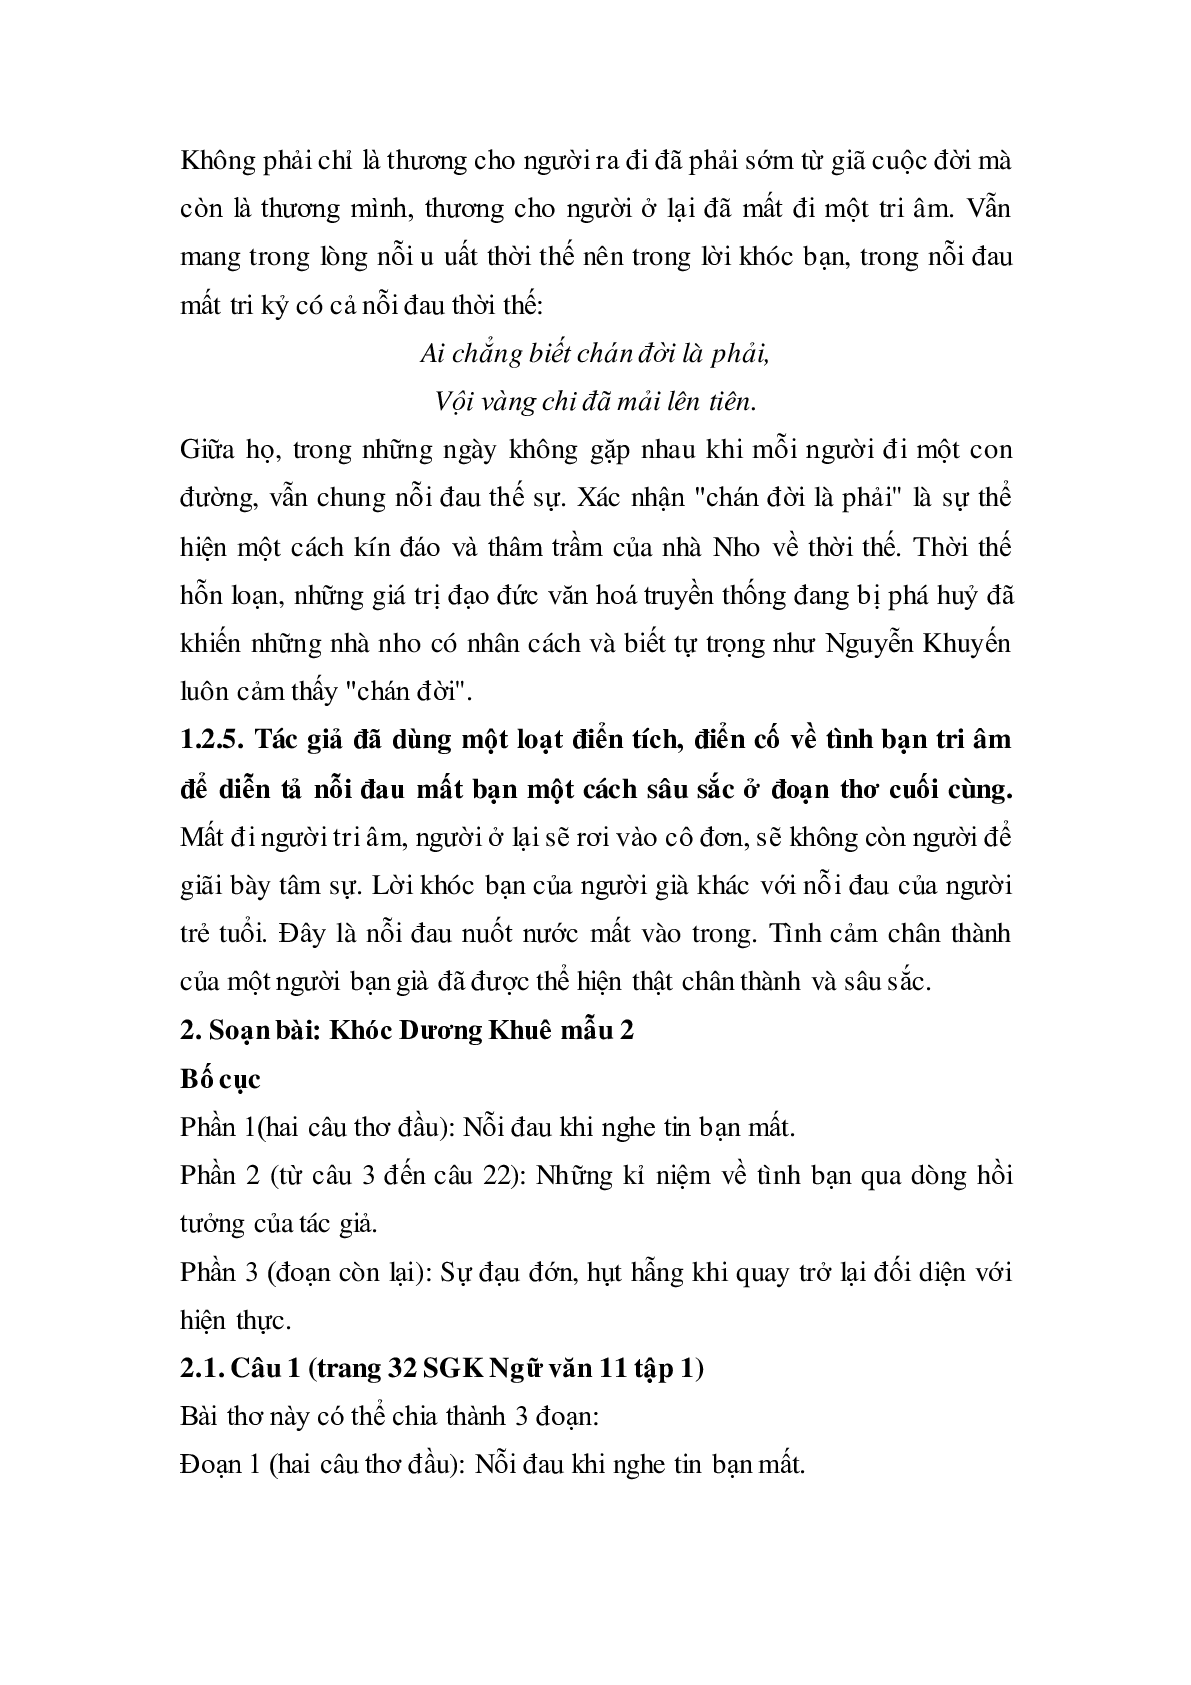 Soạn bài Khóc Dương Khuê - ngắn nhất Soạn văn 11 (trang 3)